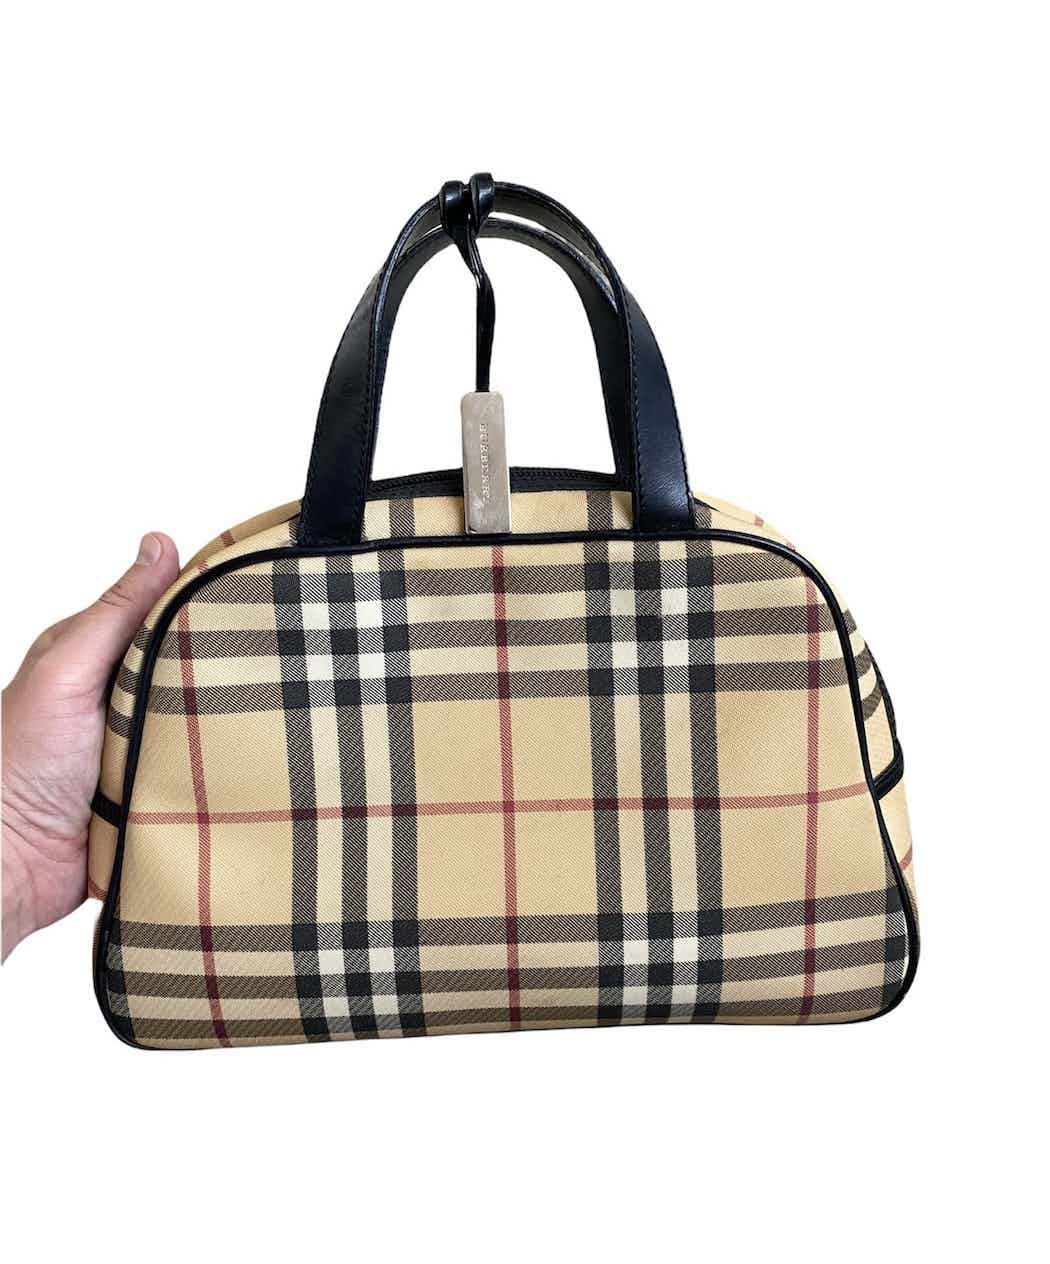 🔥Burberry Nova Check Tote Bag/Burberry Handbag/Shoulder Bag